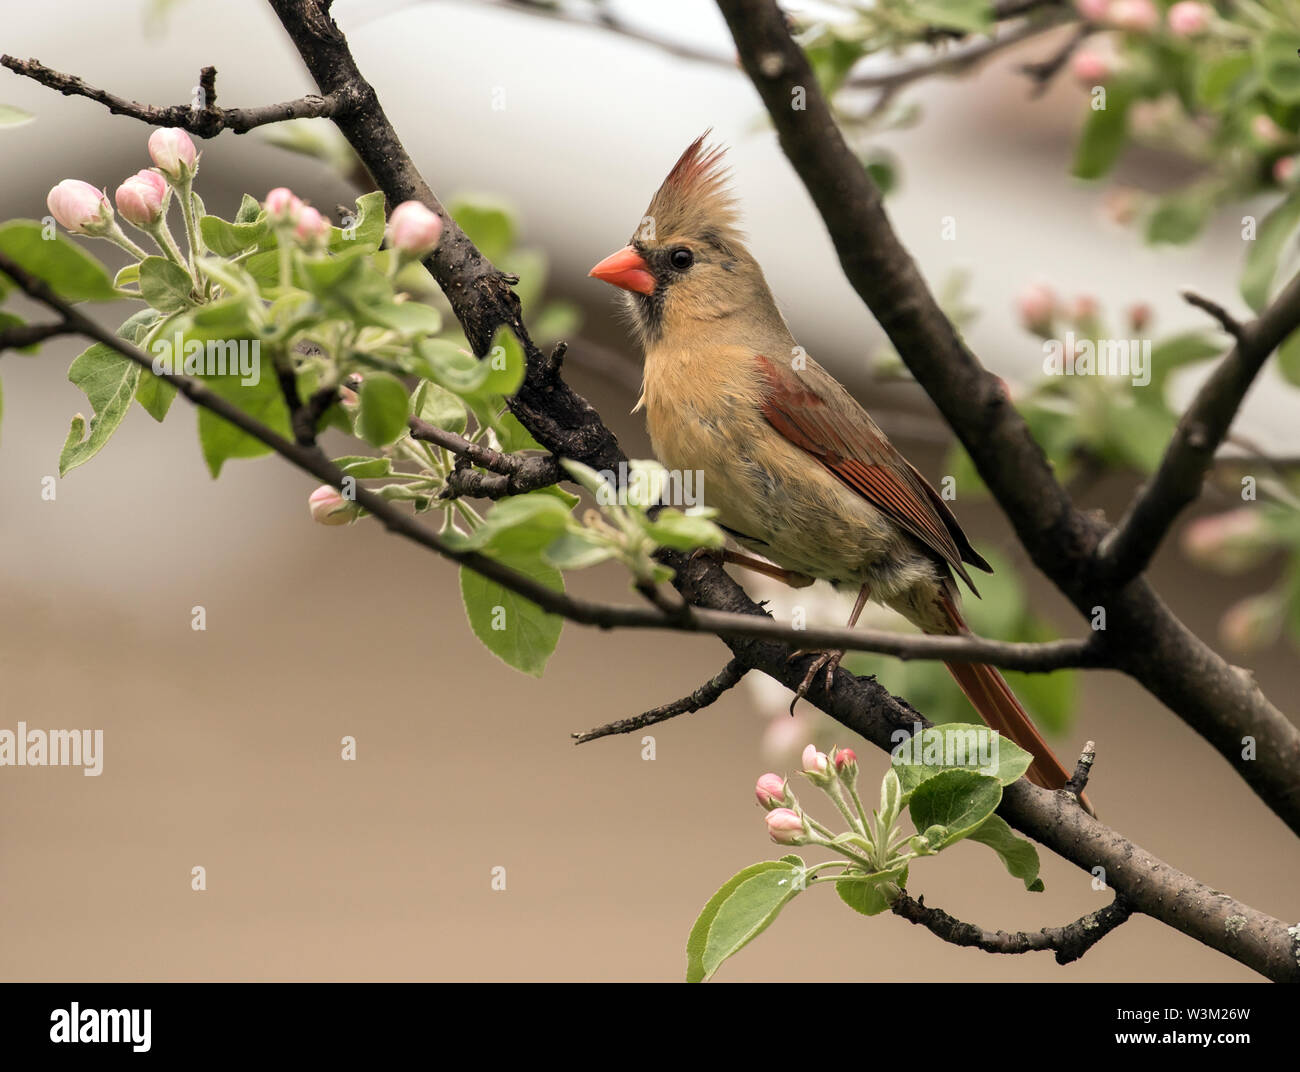 De gros plan femme songbird Cardinal se percher dans la floraison pommier,Québec,Canada. Nom scientifique de cet oiseau est Cardinalis cardinalis Banque D'Images